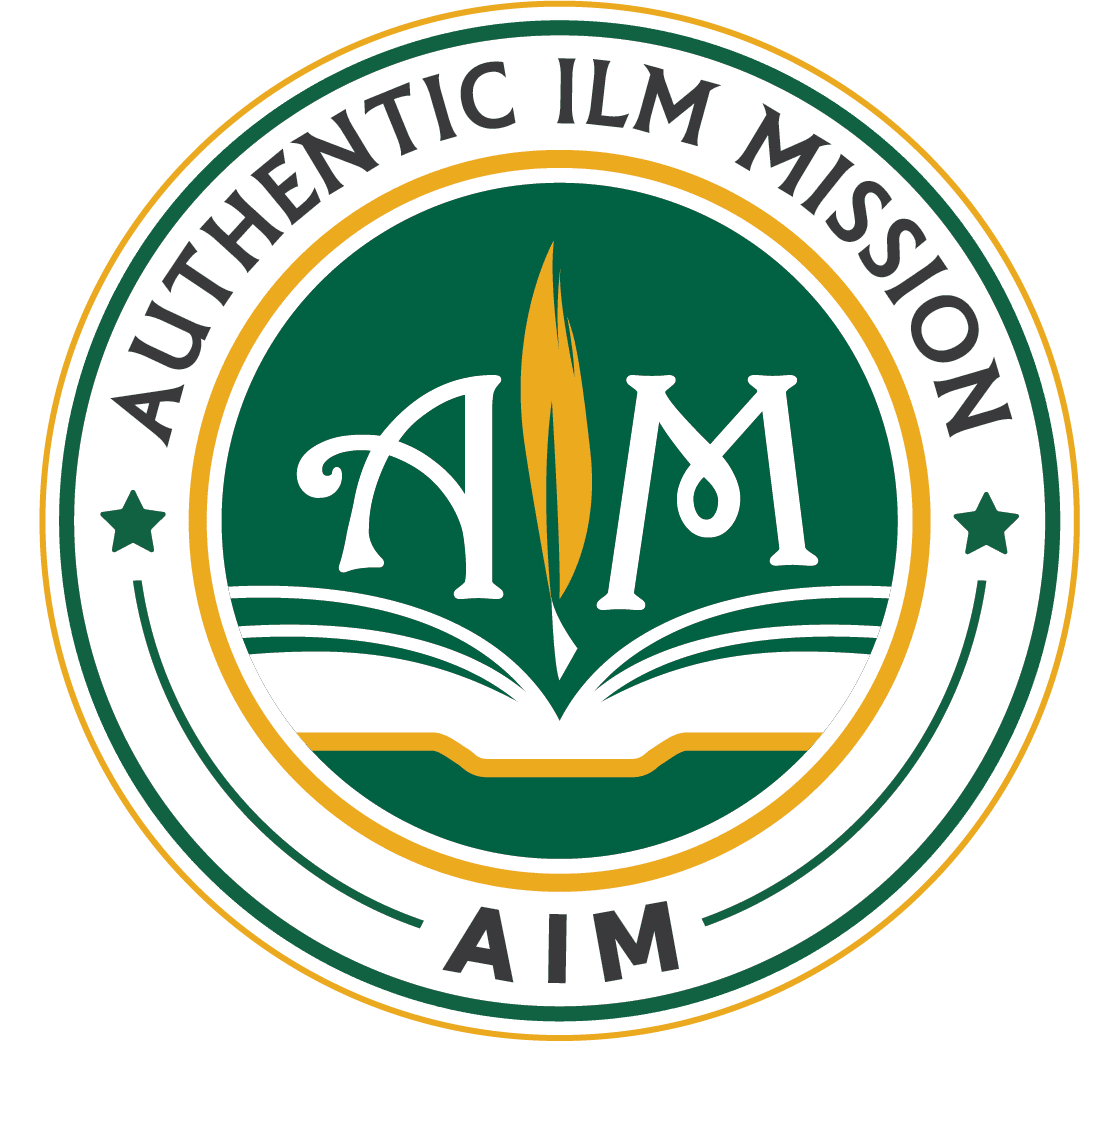 Authentic Ilm Mission